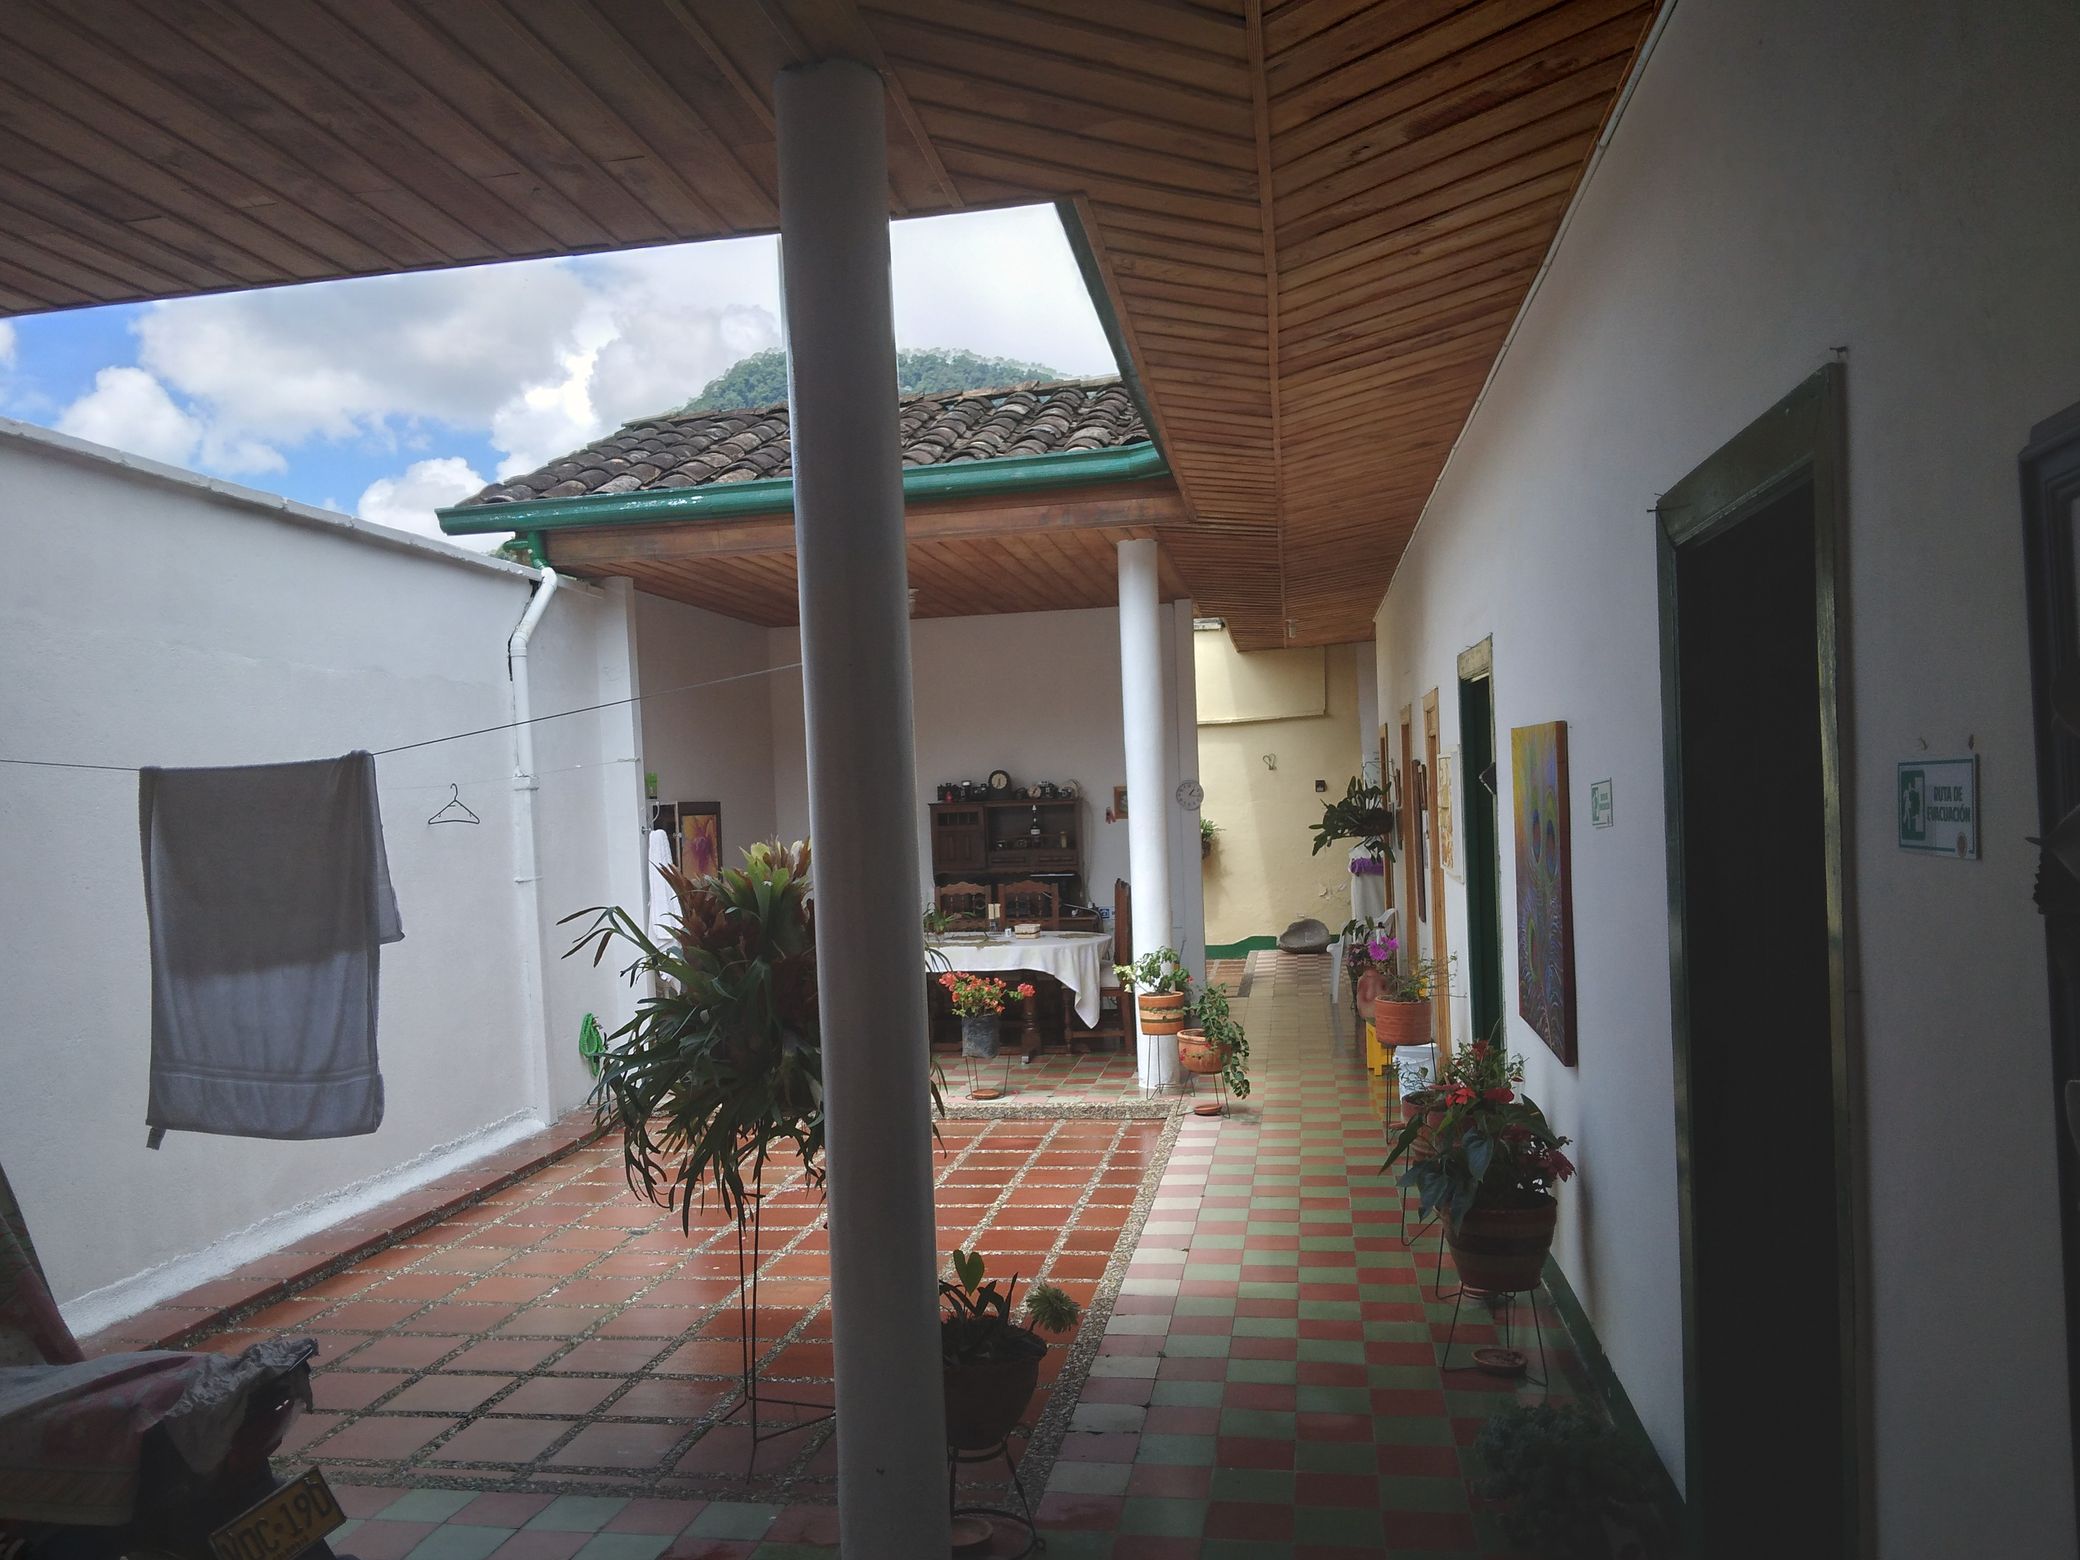 Tipikus ház Jardínban, nyitott belső udvarral, nekem nagyon bejött